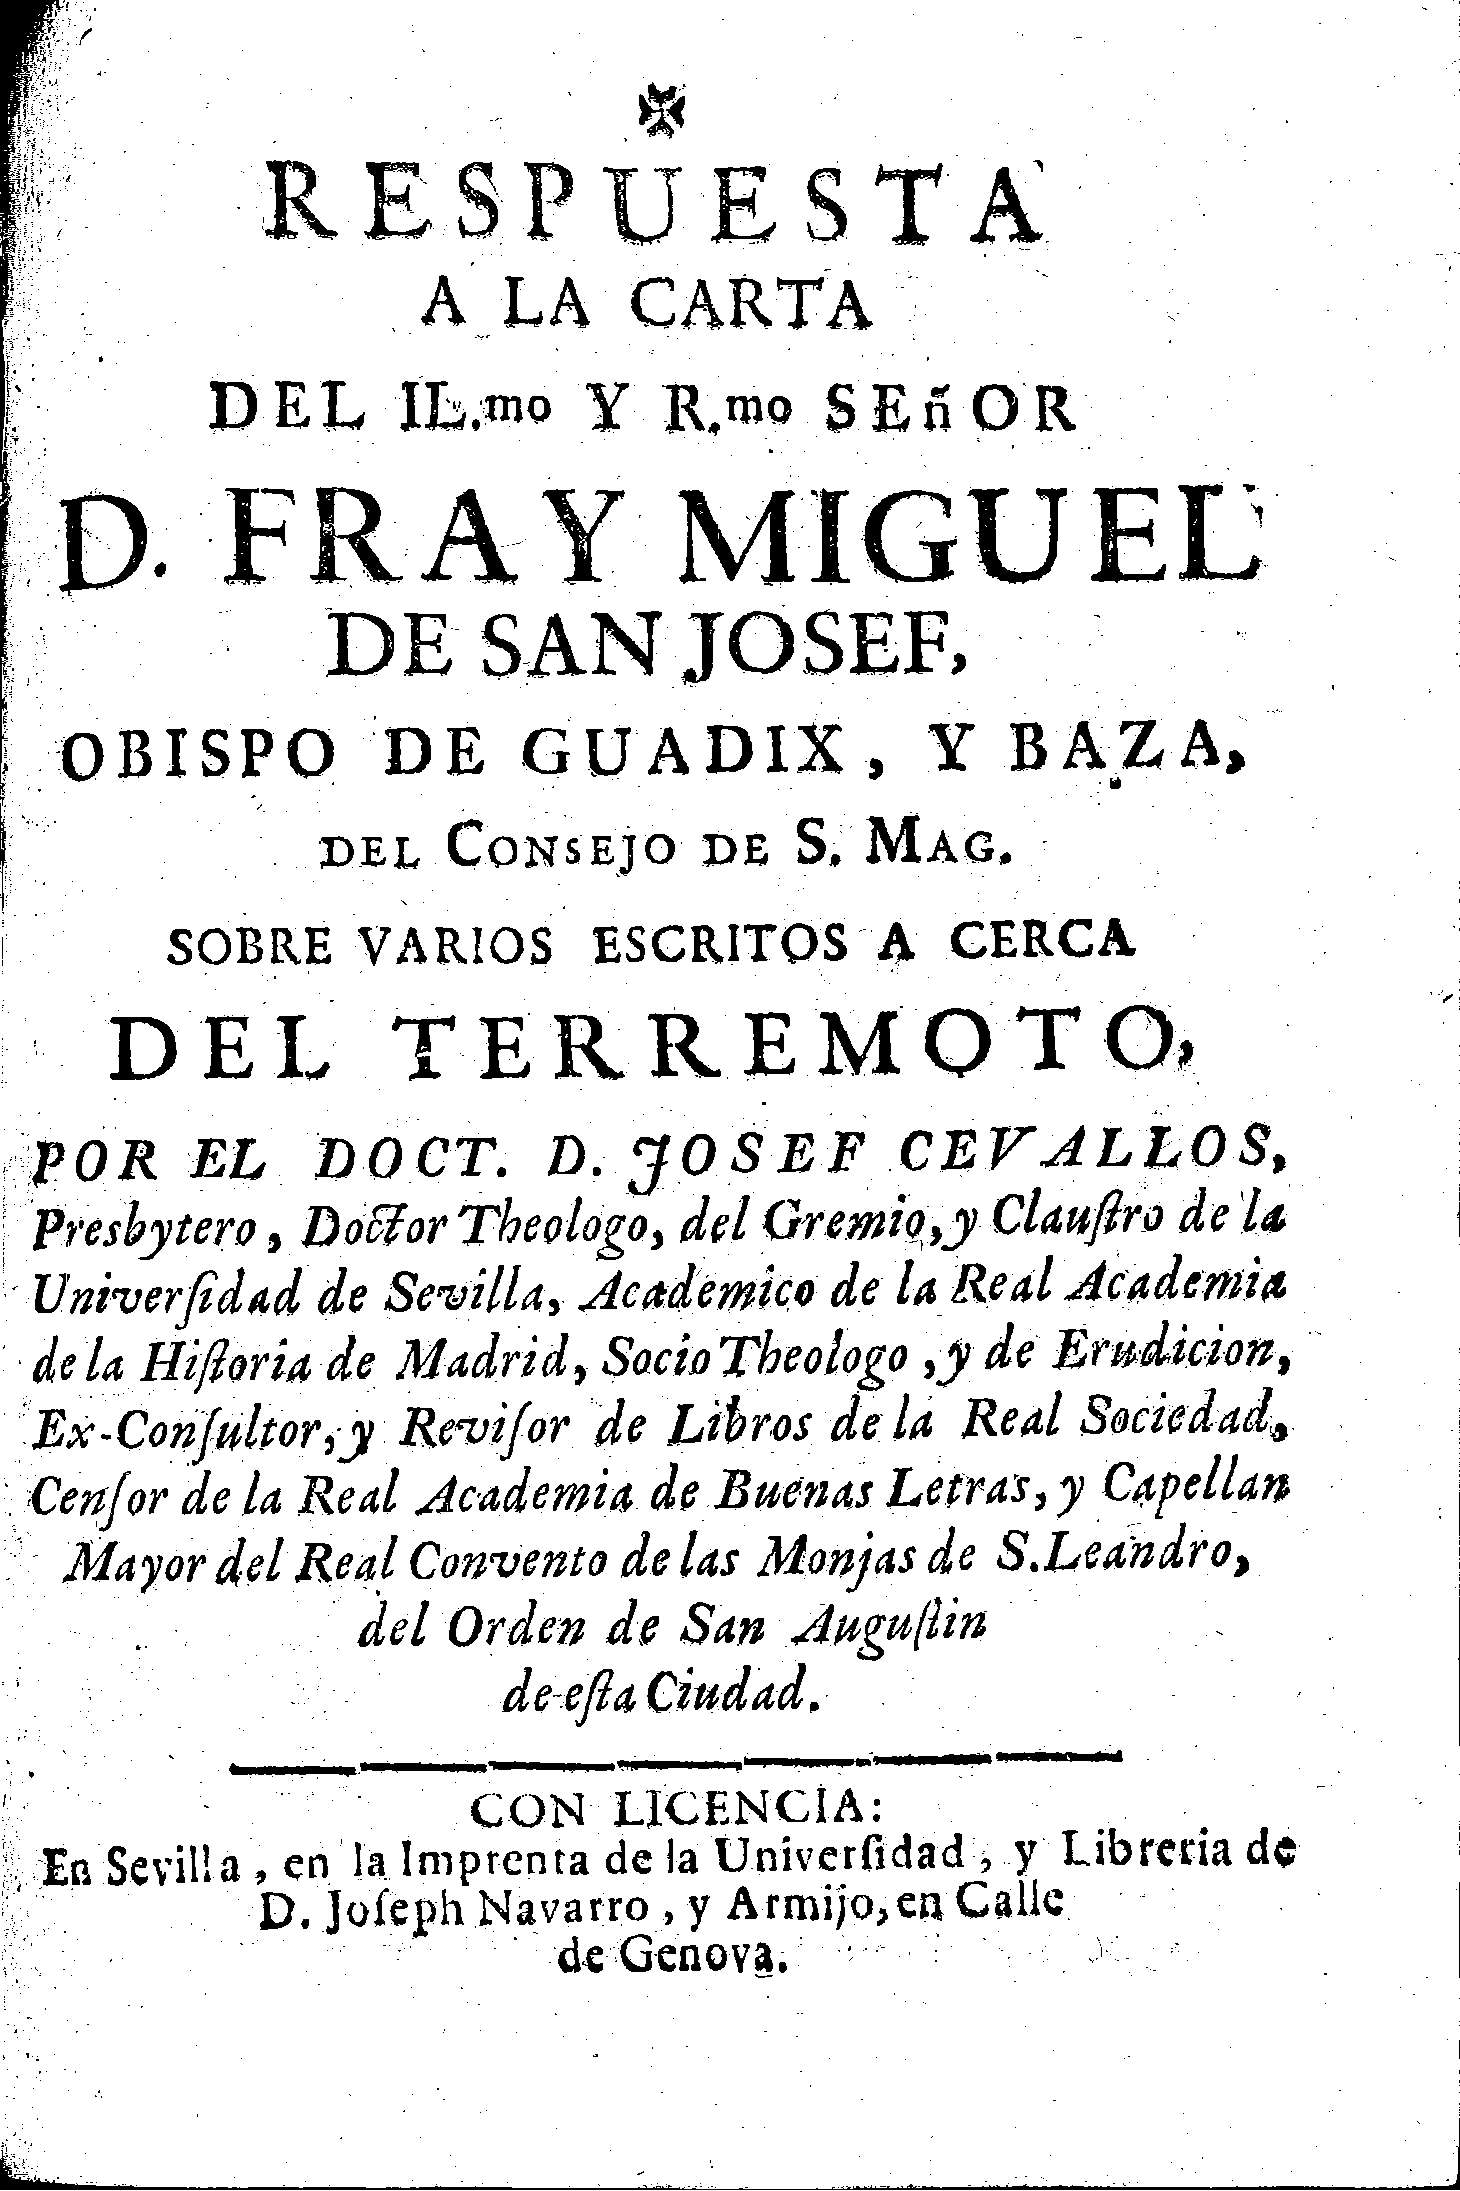 Respuesta a la carta ...[de] Fray Miguel de San Josef, obispo de Guadix y Baza ... sobre varios escritos a cerca de terremoto